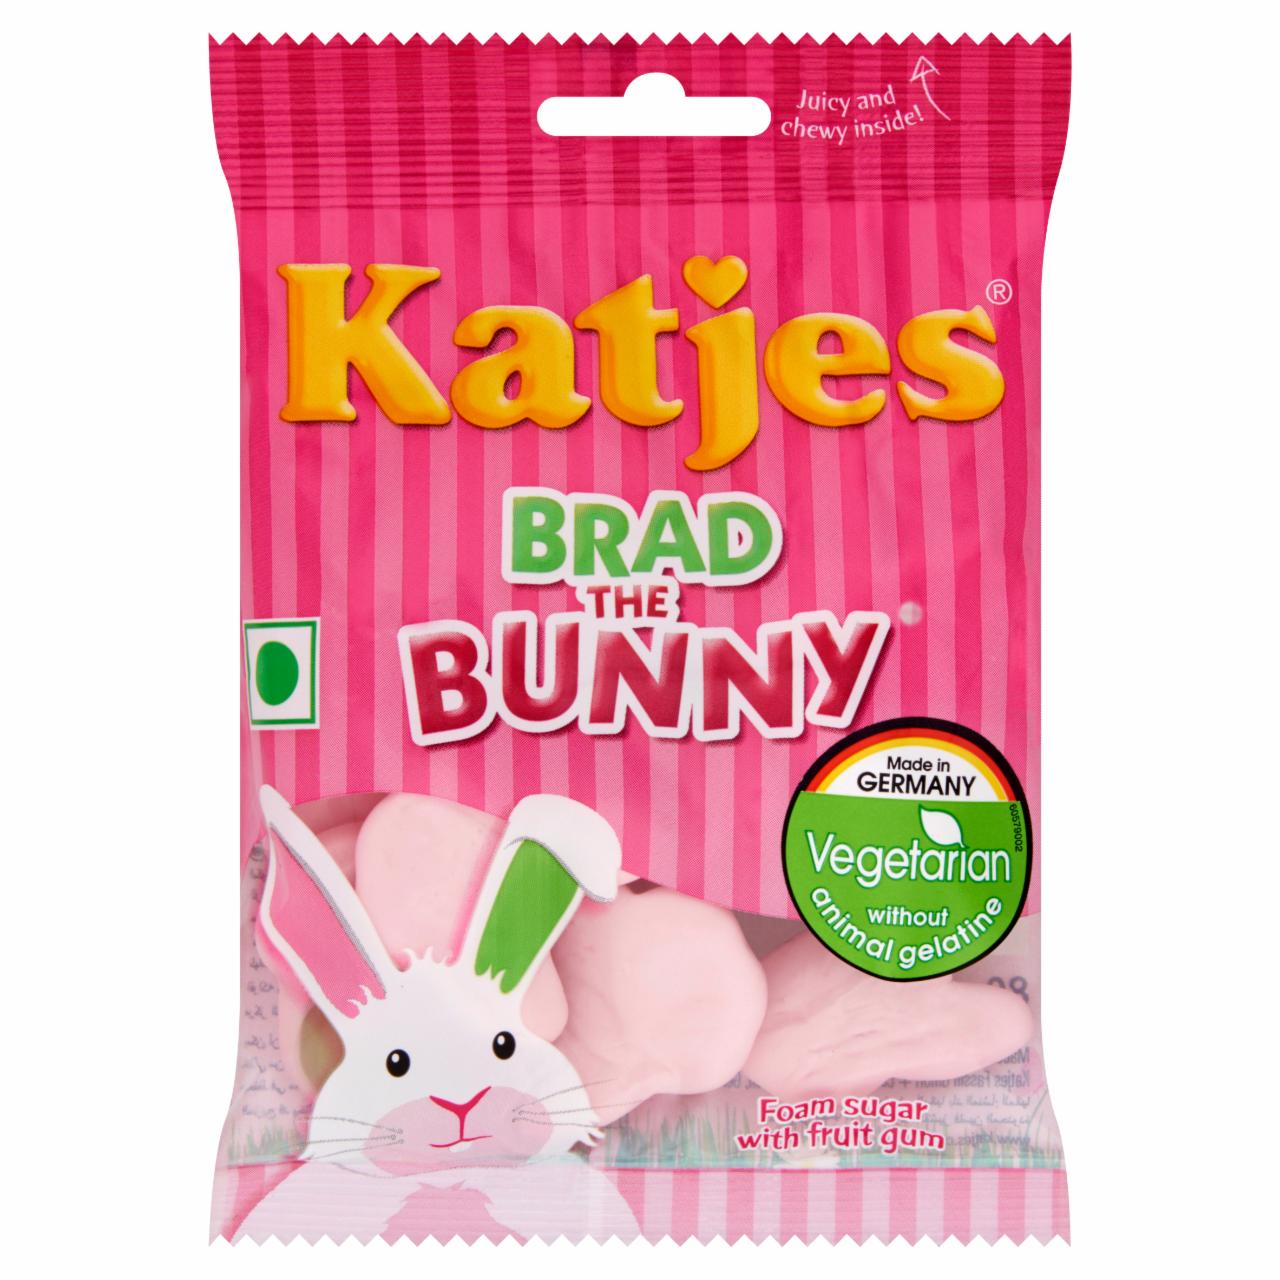 Képek - Katjes Brad the Bunny habcukor gyümölcs ízű gumicukorral 80 g